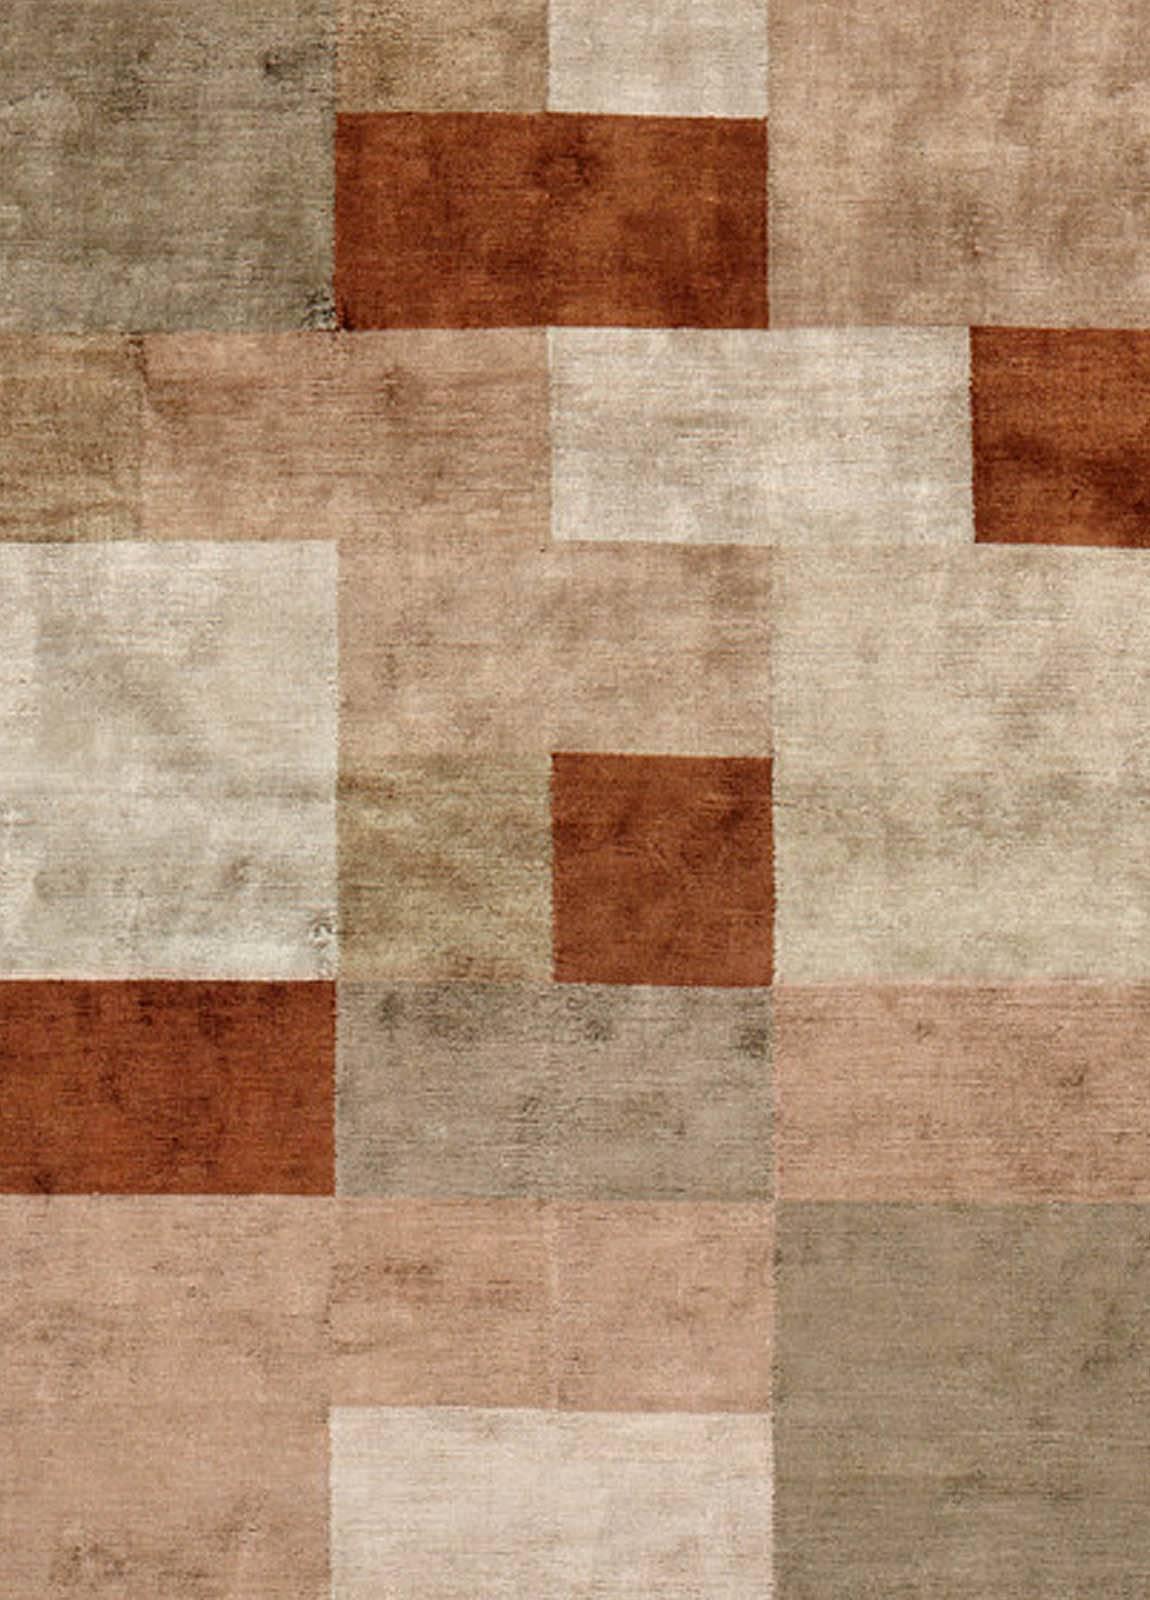 Contemporary high-quality Dune Design handmade silk rug by Doris Leslie Blau.
Size: 9'0